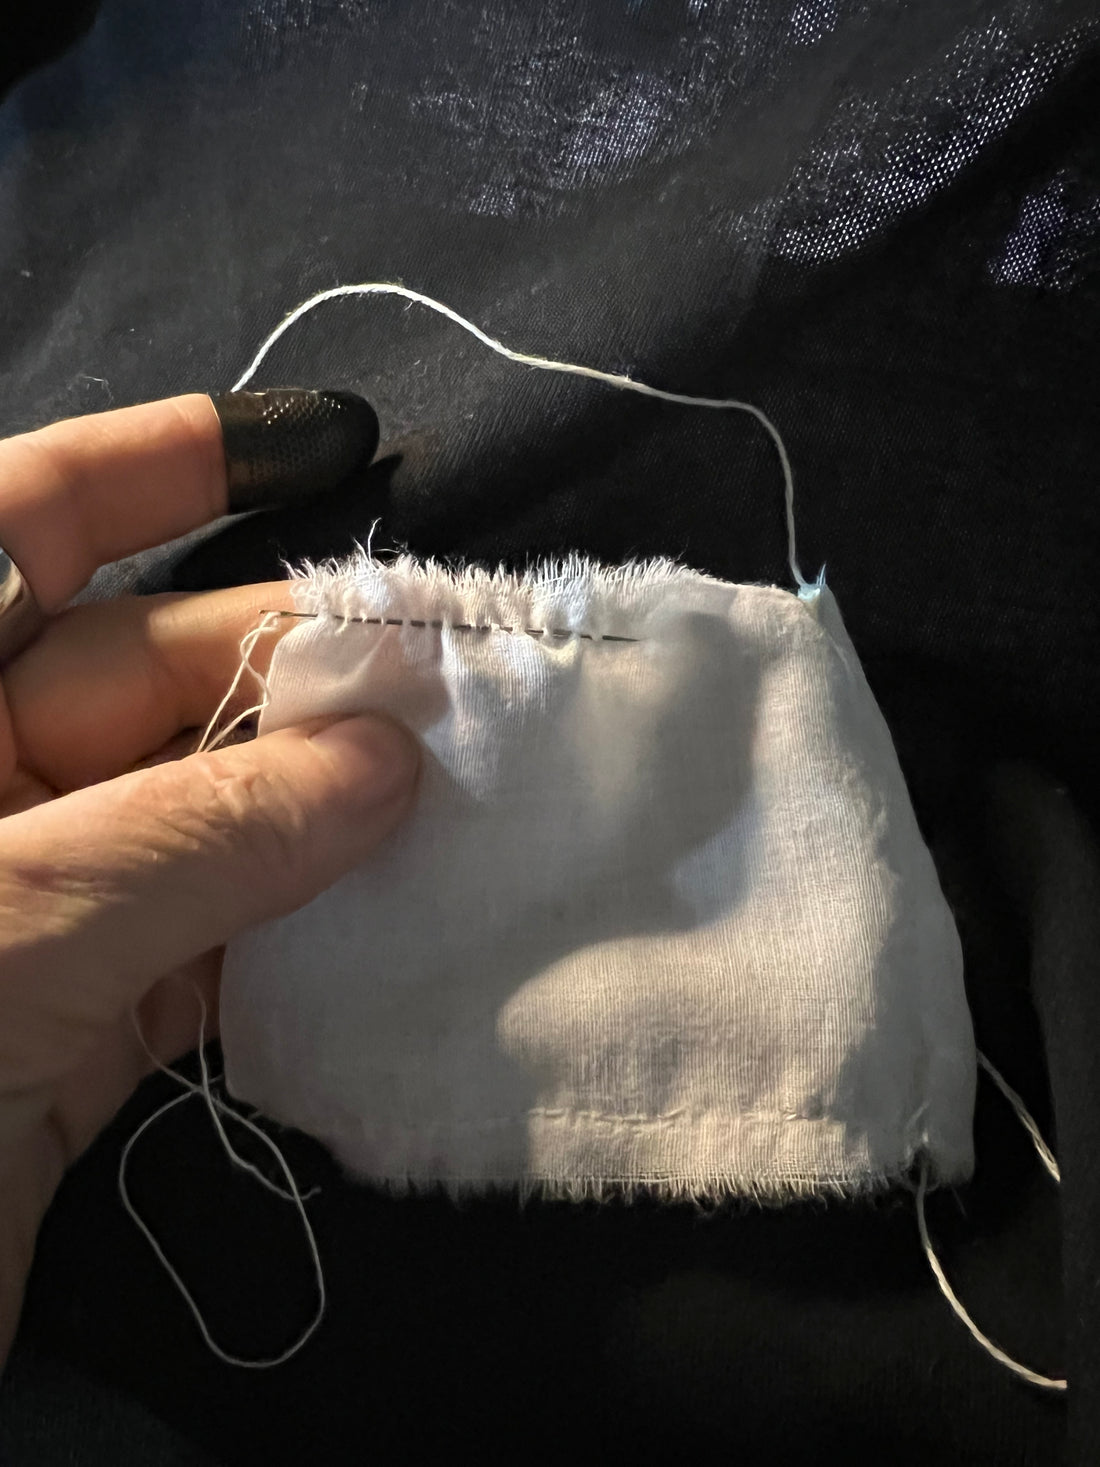 Hand-Sewn Reusable Cotton Tea Bags - $16 Kit